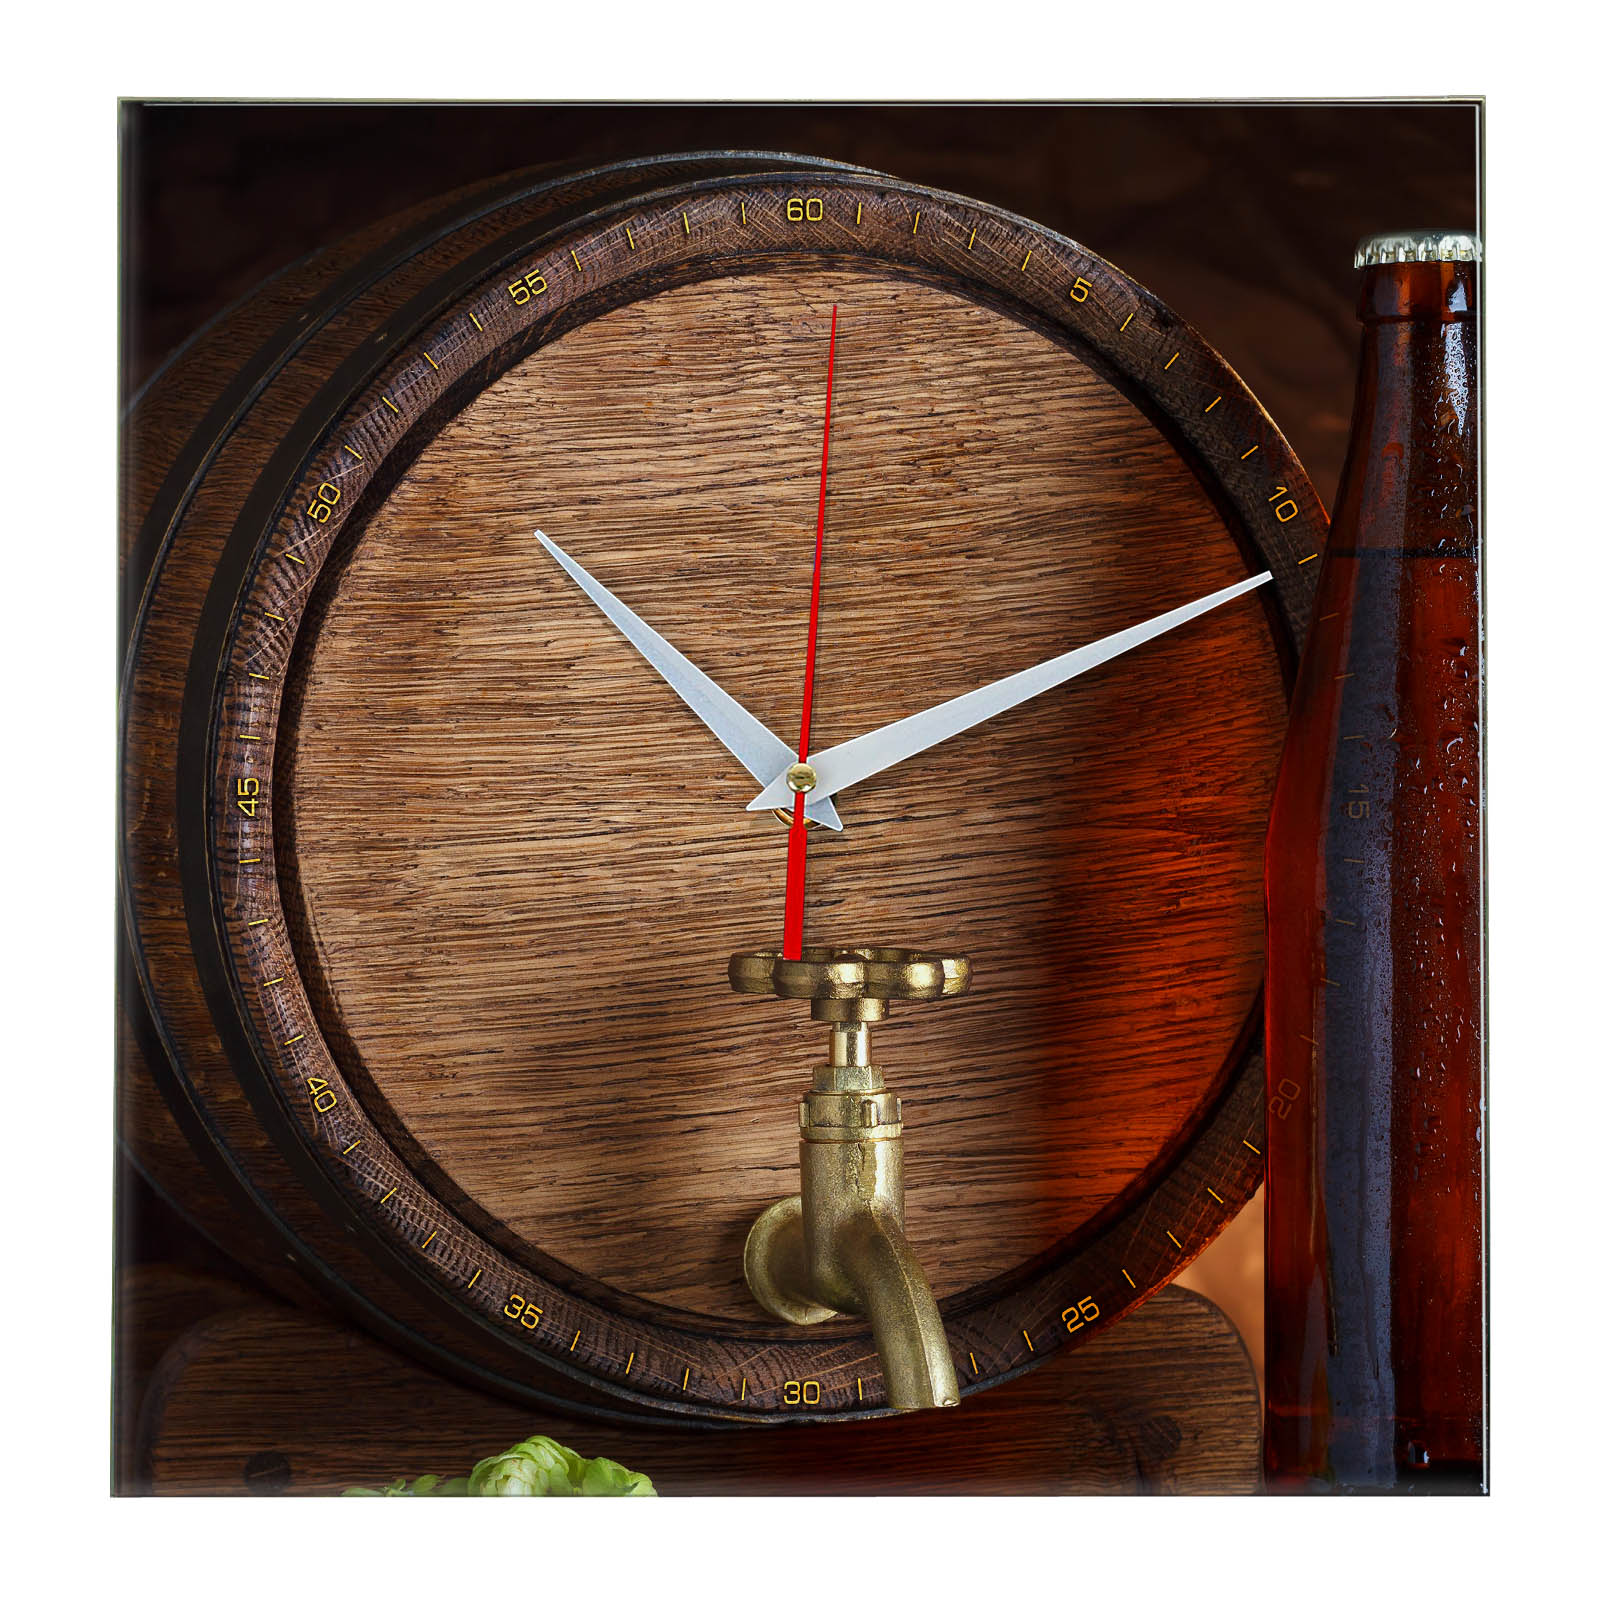 Пивные часы. Часы настенные пиво. Часы в виде бочки настенные. Часы настенные пивная тематика. Часы с пивной тематикой.